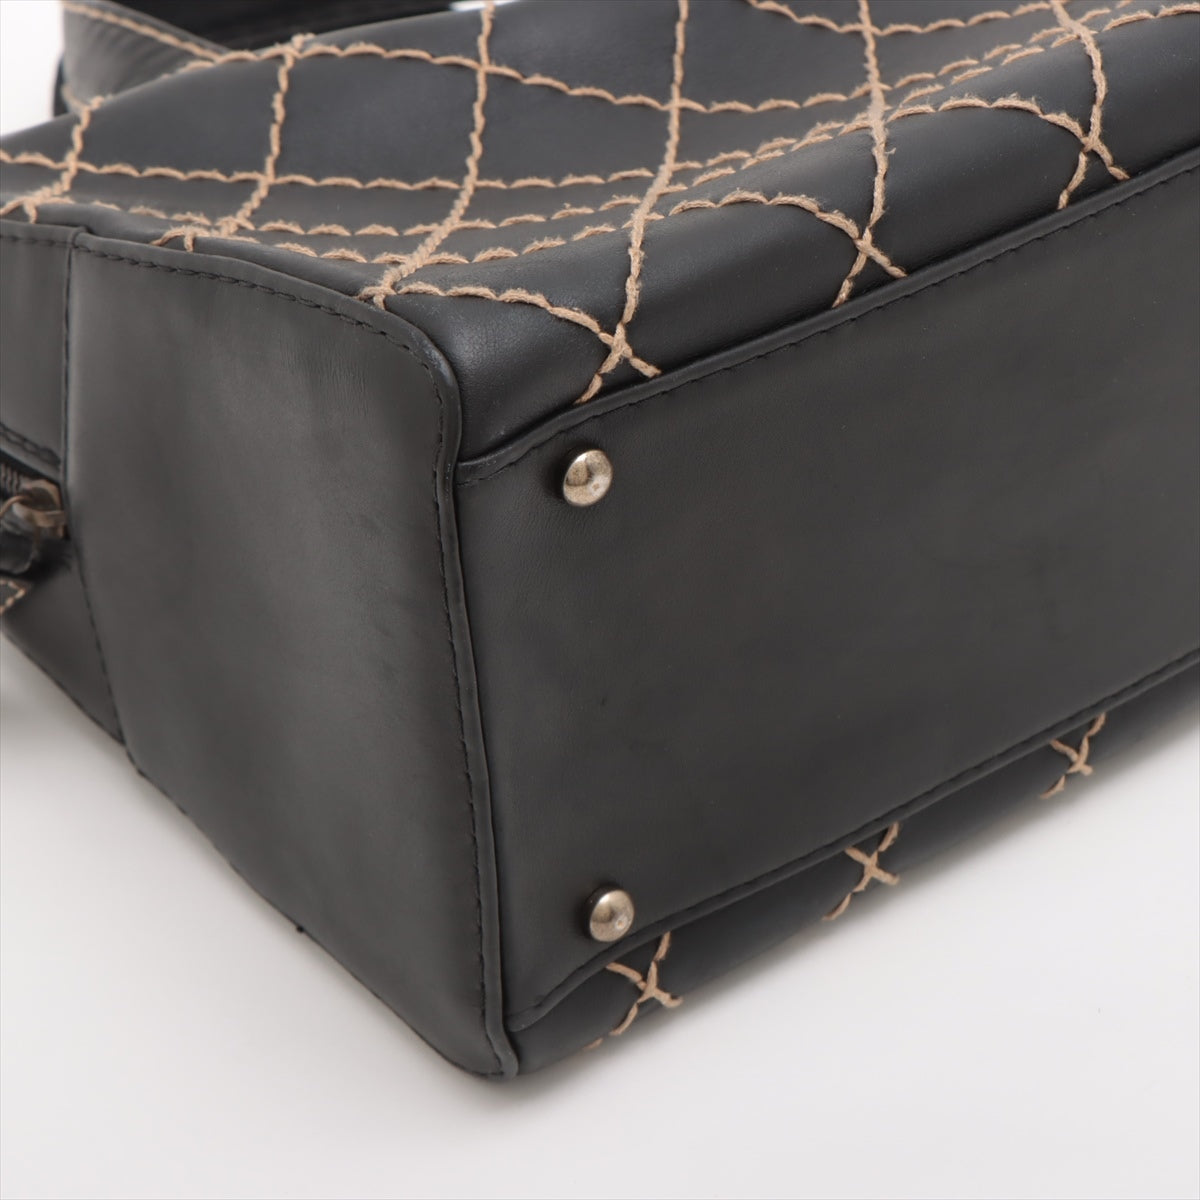 Chanel Wild Stitch Lambskin Handbag Black Gunmetal Fittings 6XXXXXX